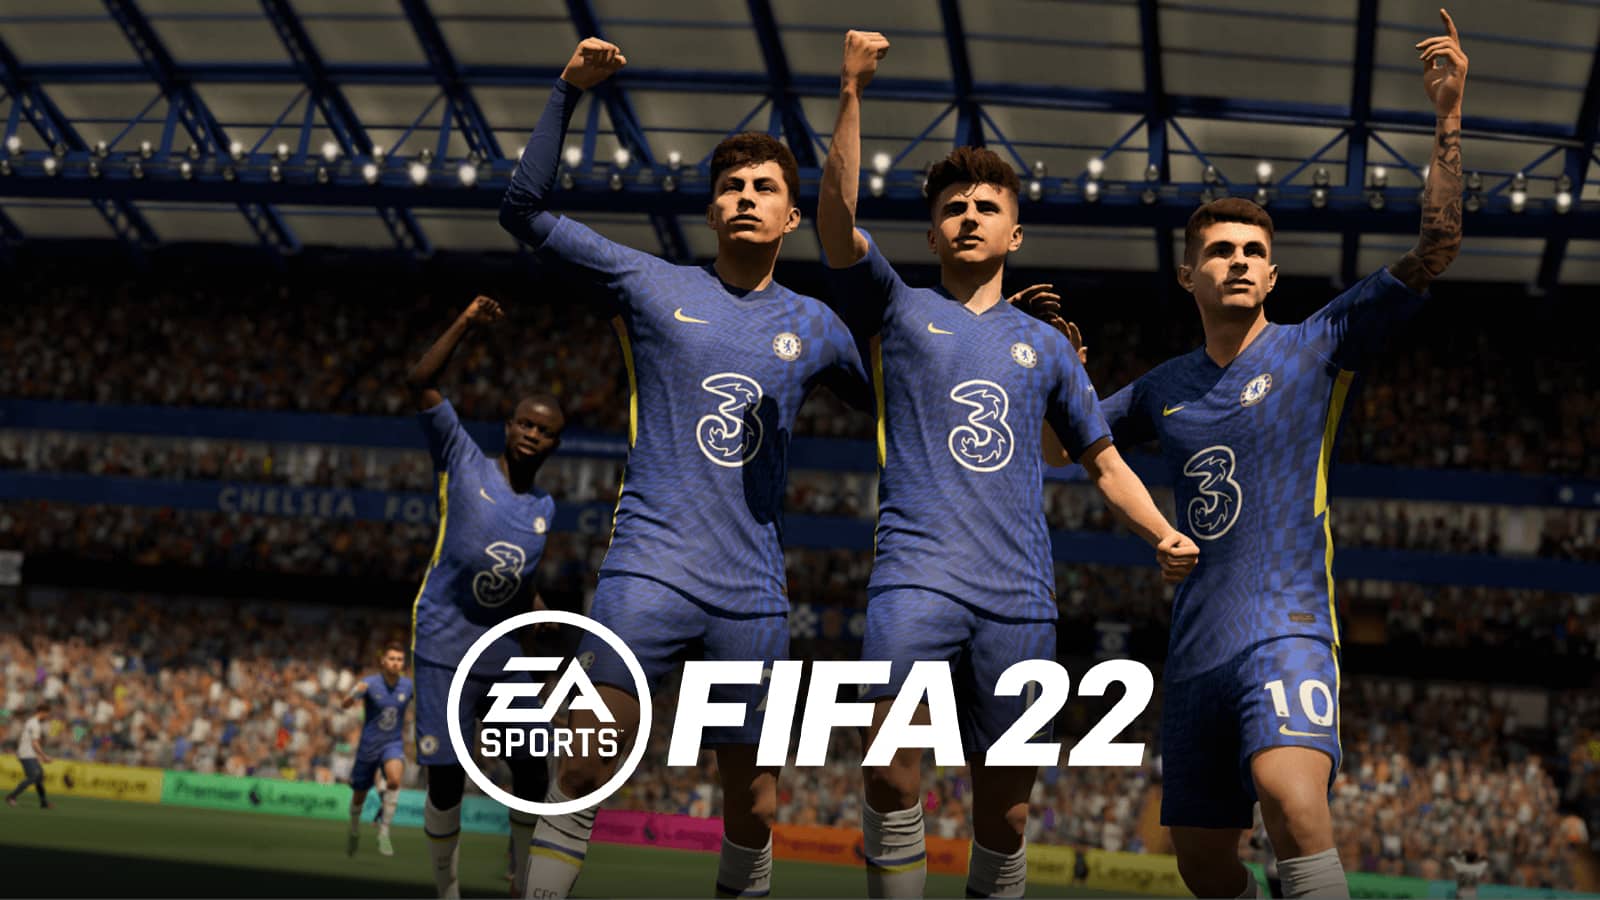 Chelsea celebrating in FIFA 22